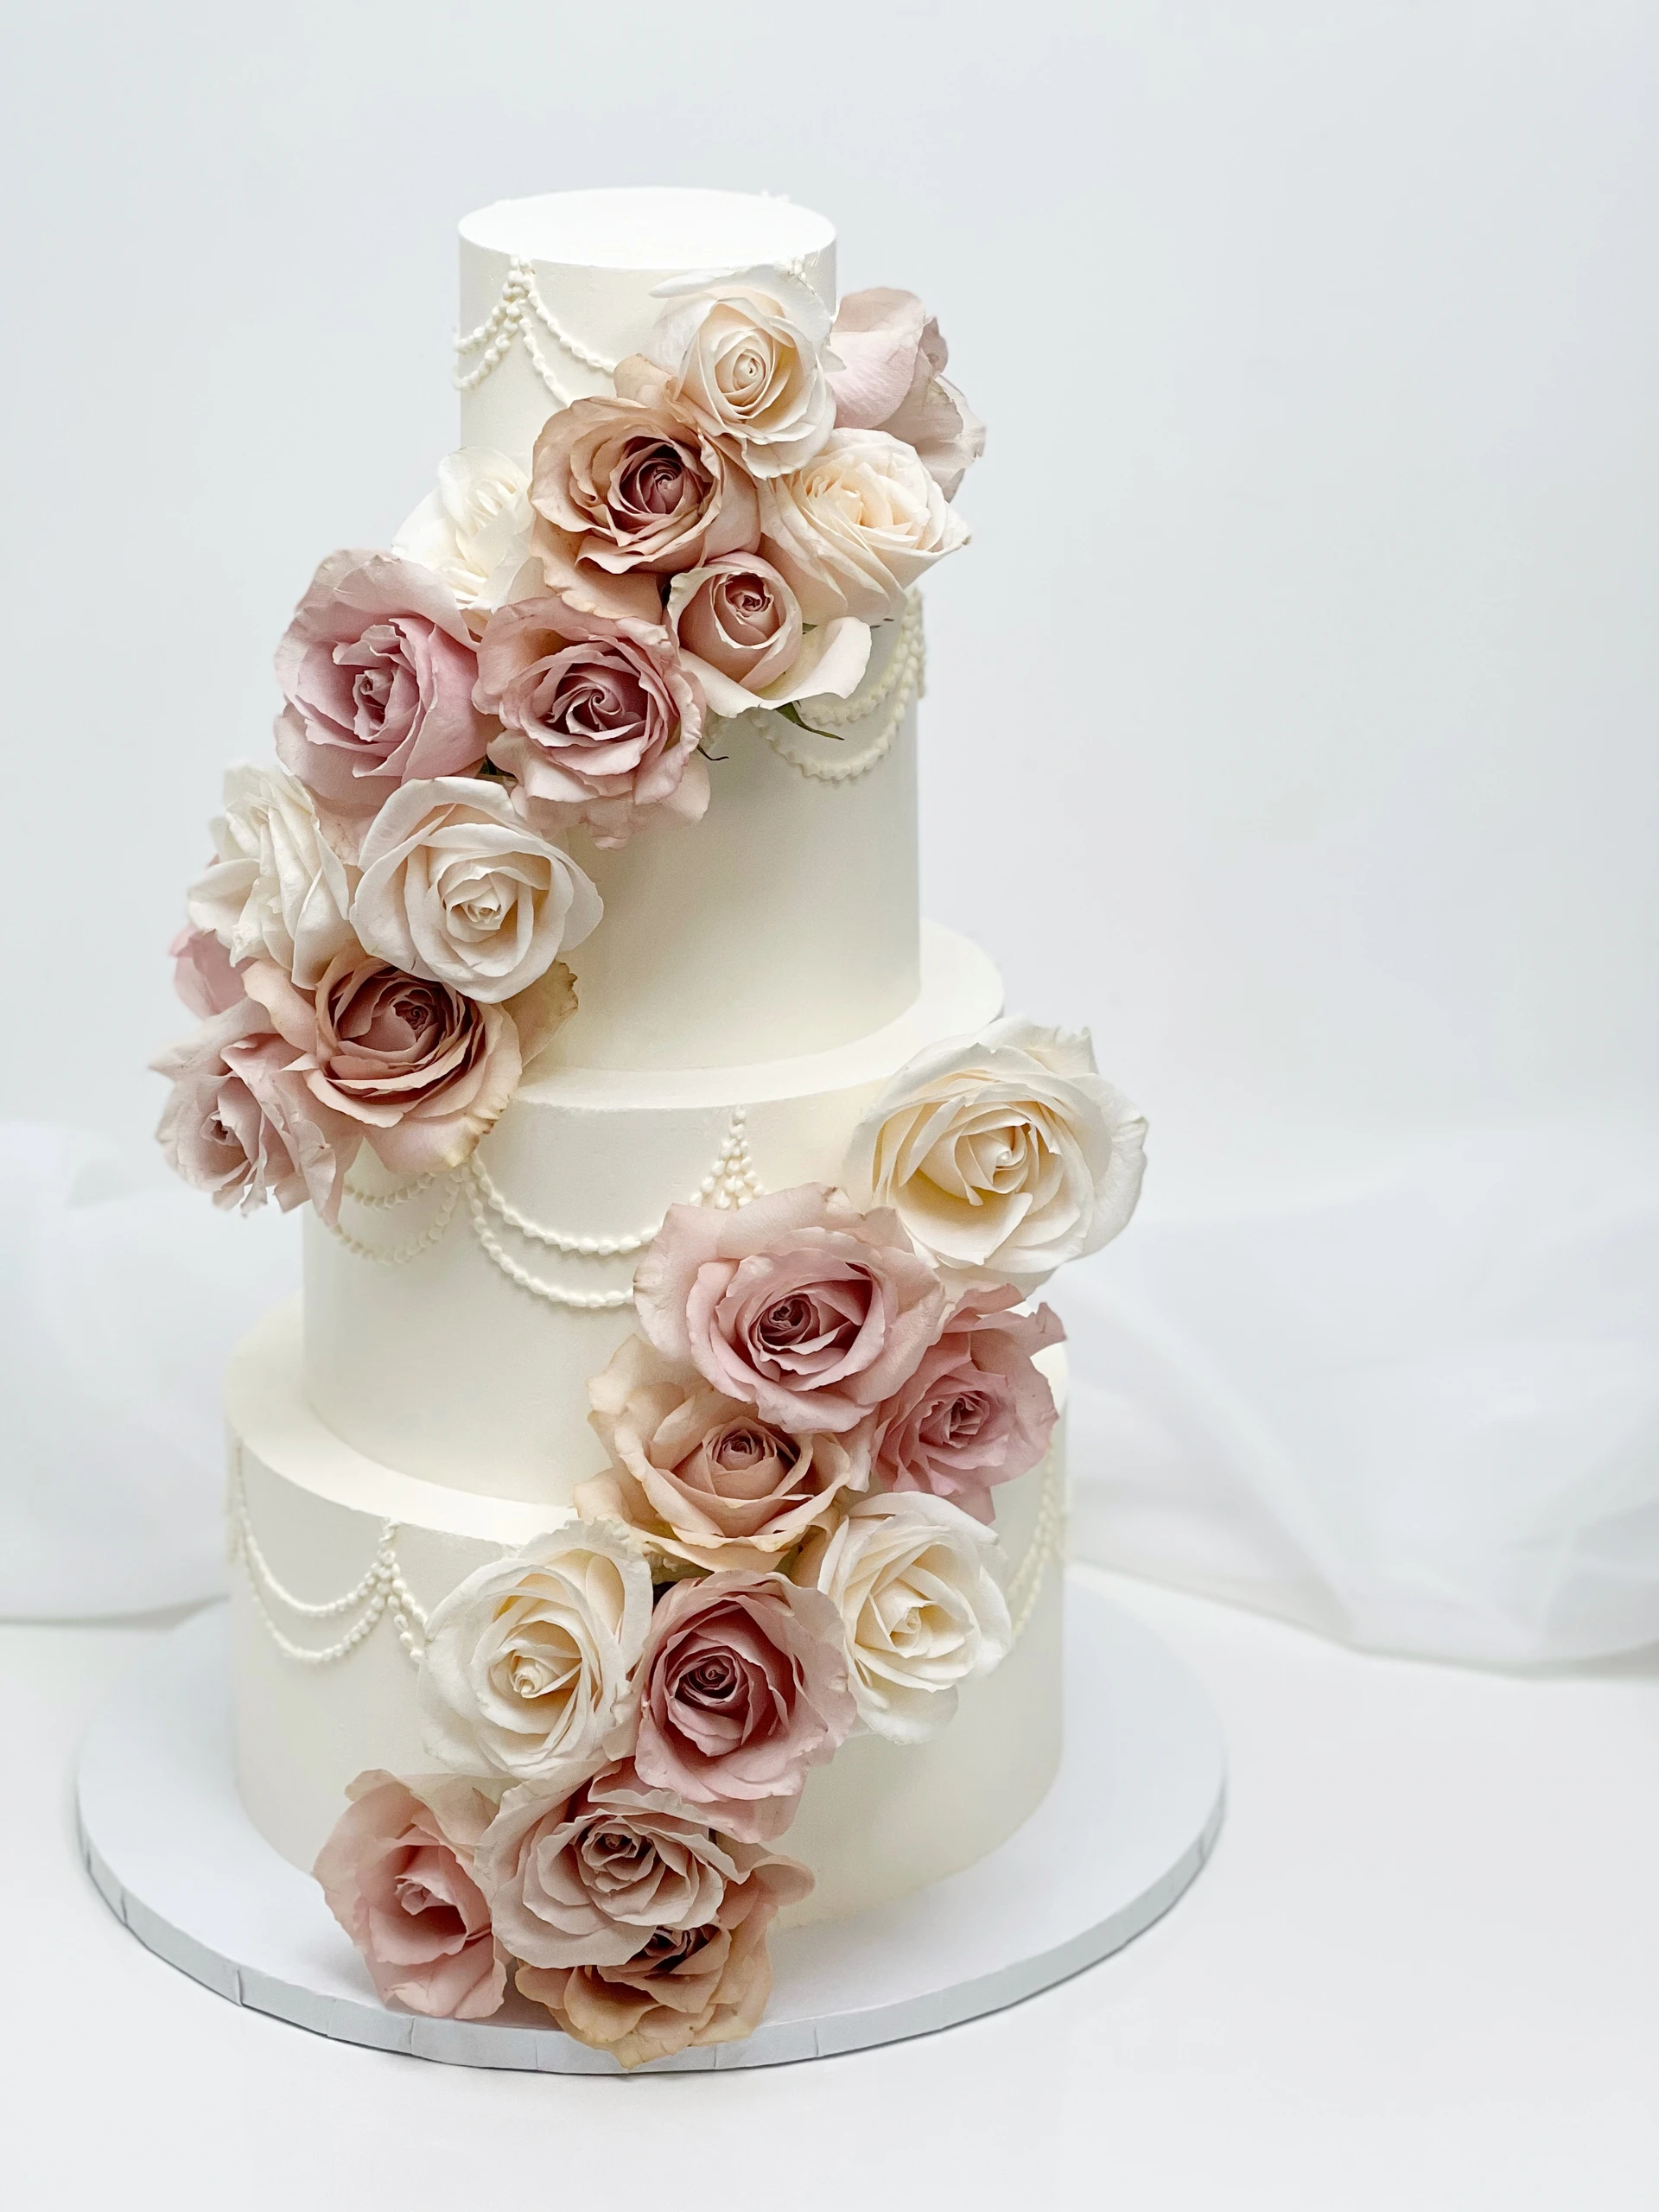 05-four-tier-white-cake-peachy-roses